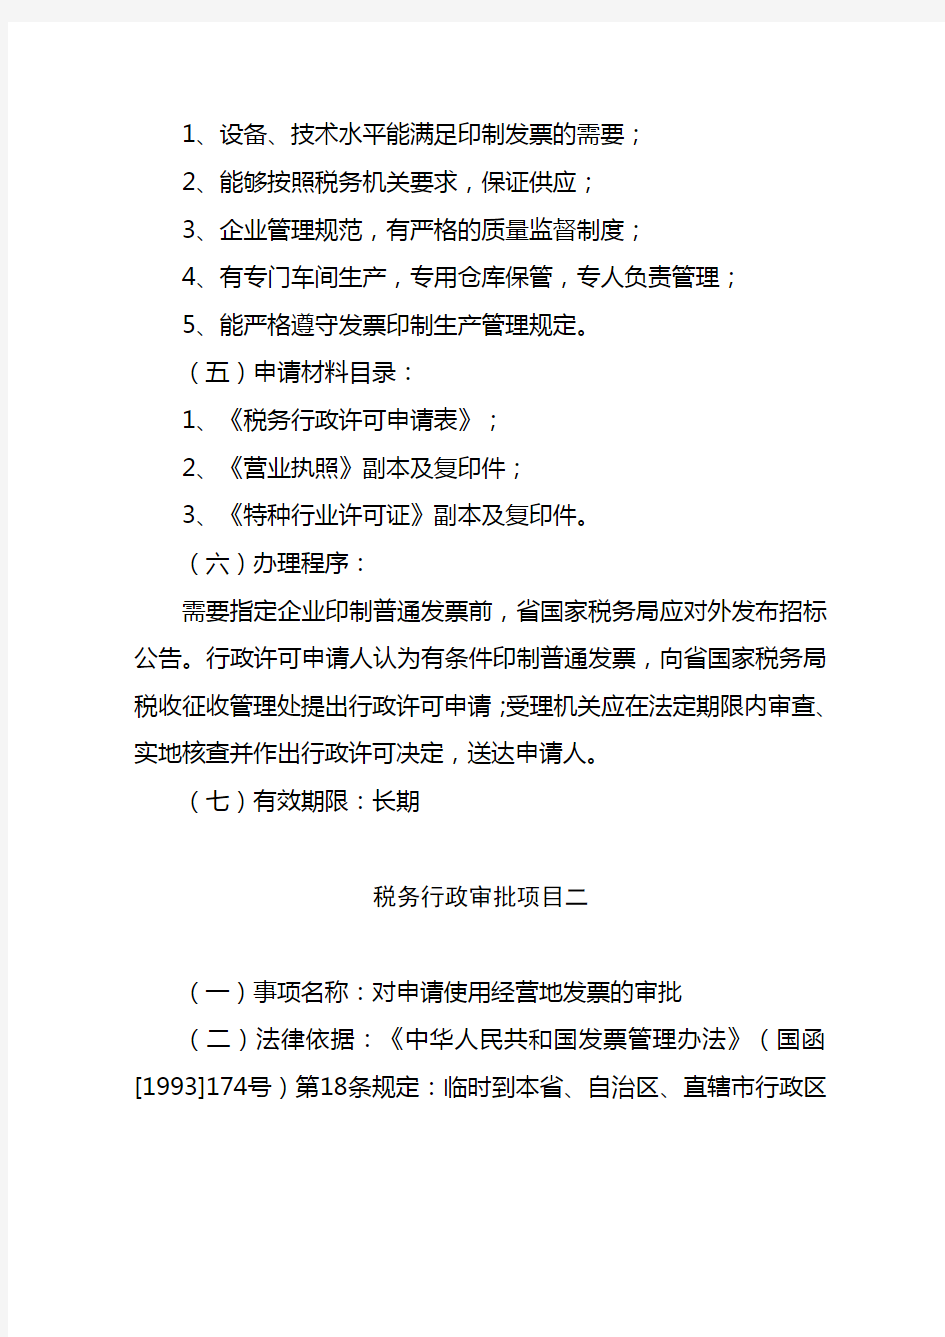 湖北省国税系统税务行政许可事项公示